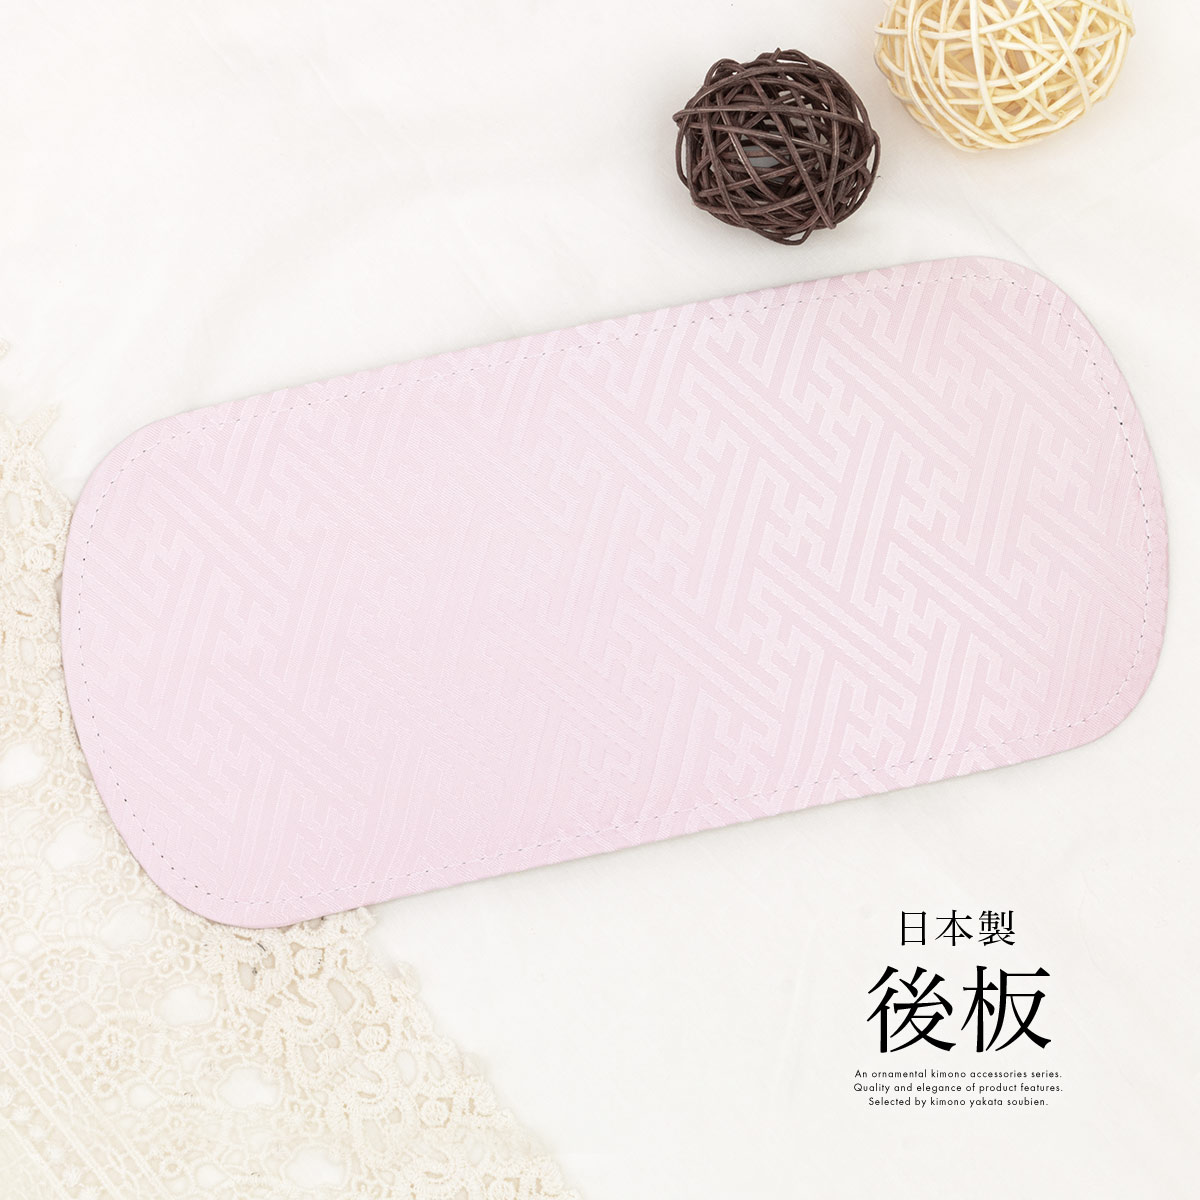 着付け小物 帯板 後板 前板兼用 日本製 通年 レディース 女性 和装小物 ピンク 紗綾形 あづま姿 あす楽対応商品 メール便